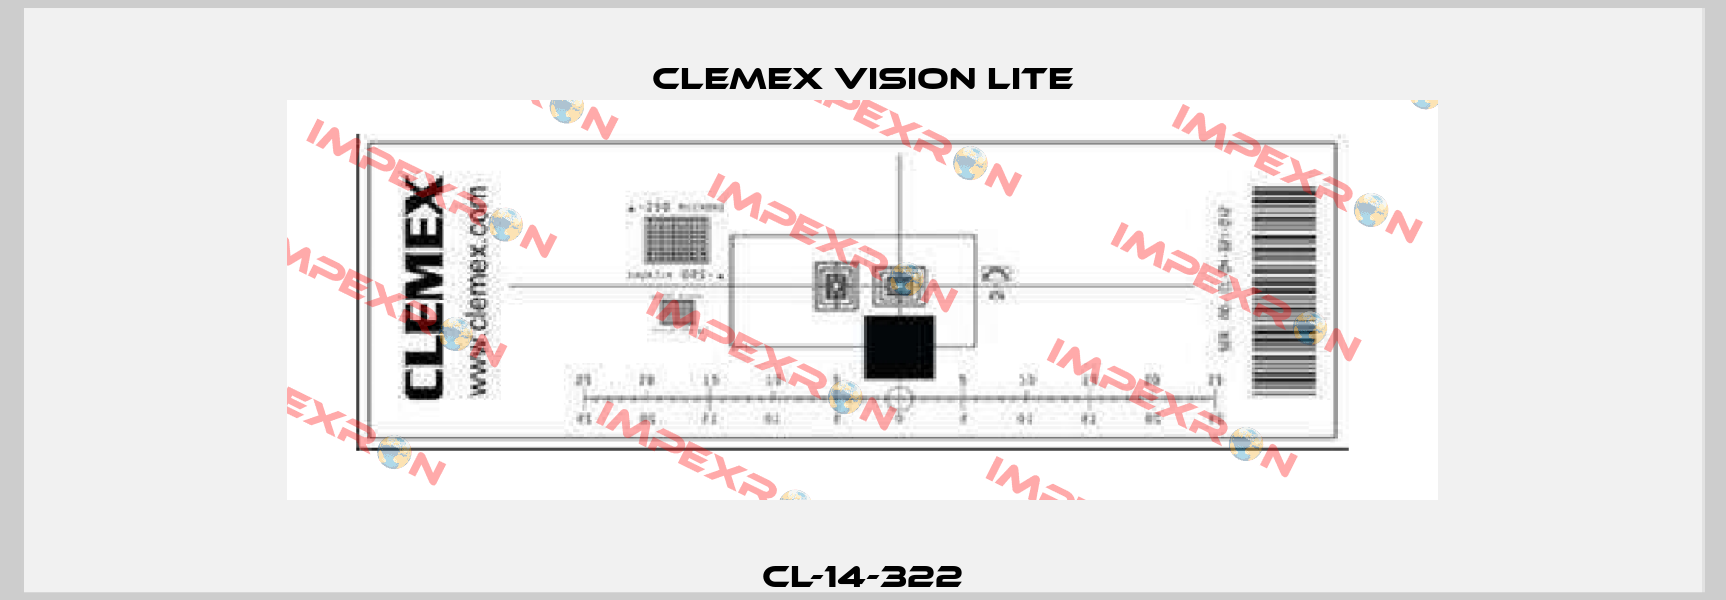 CL-14-322 Clemex Vision Lite